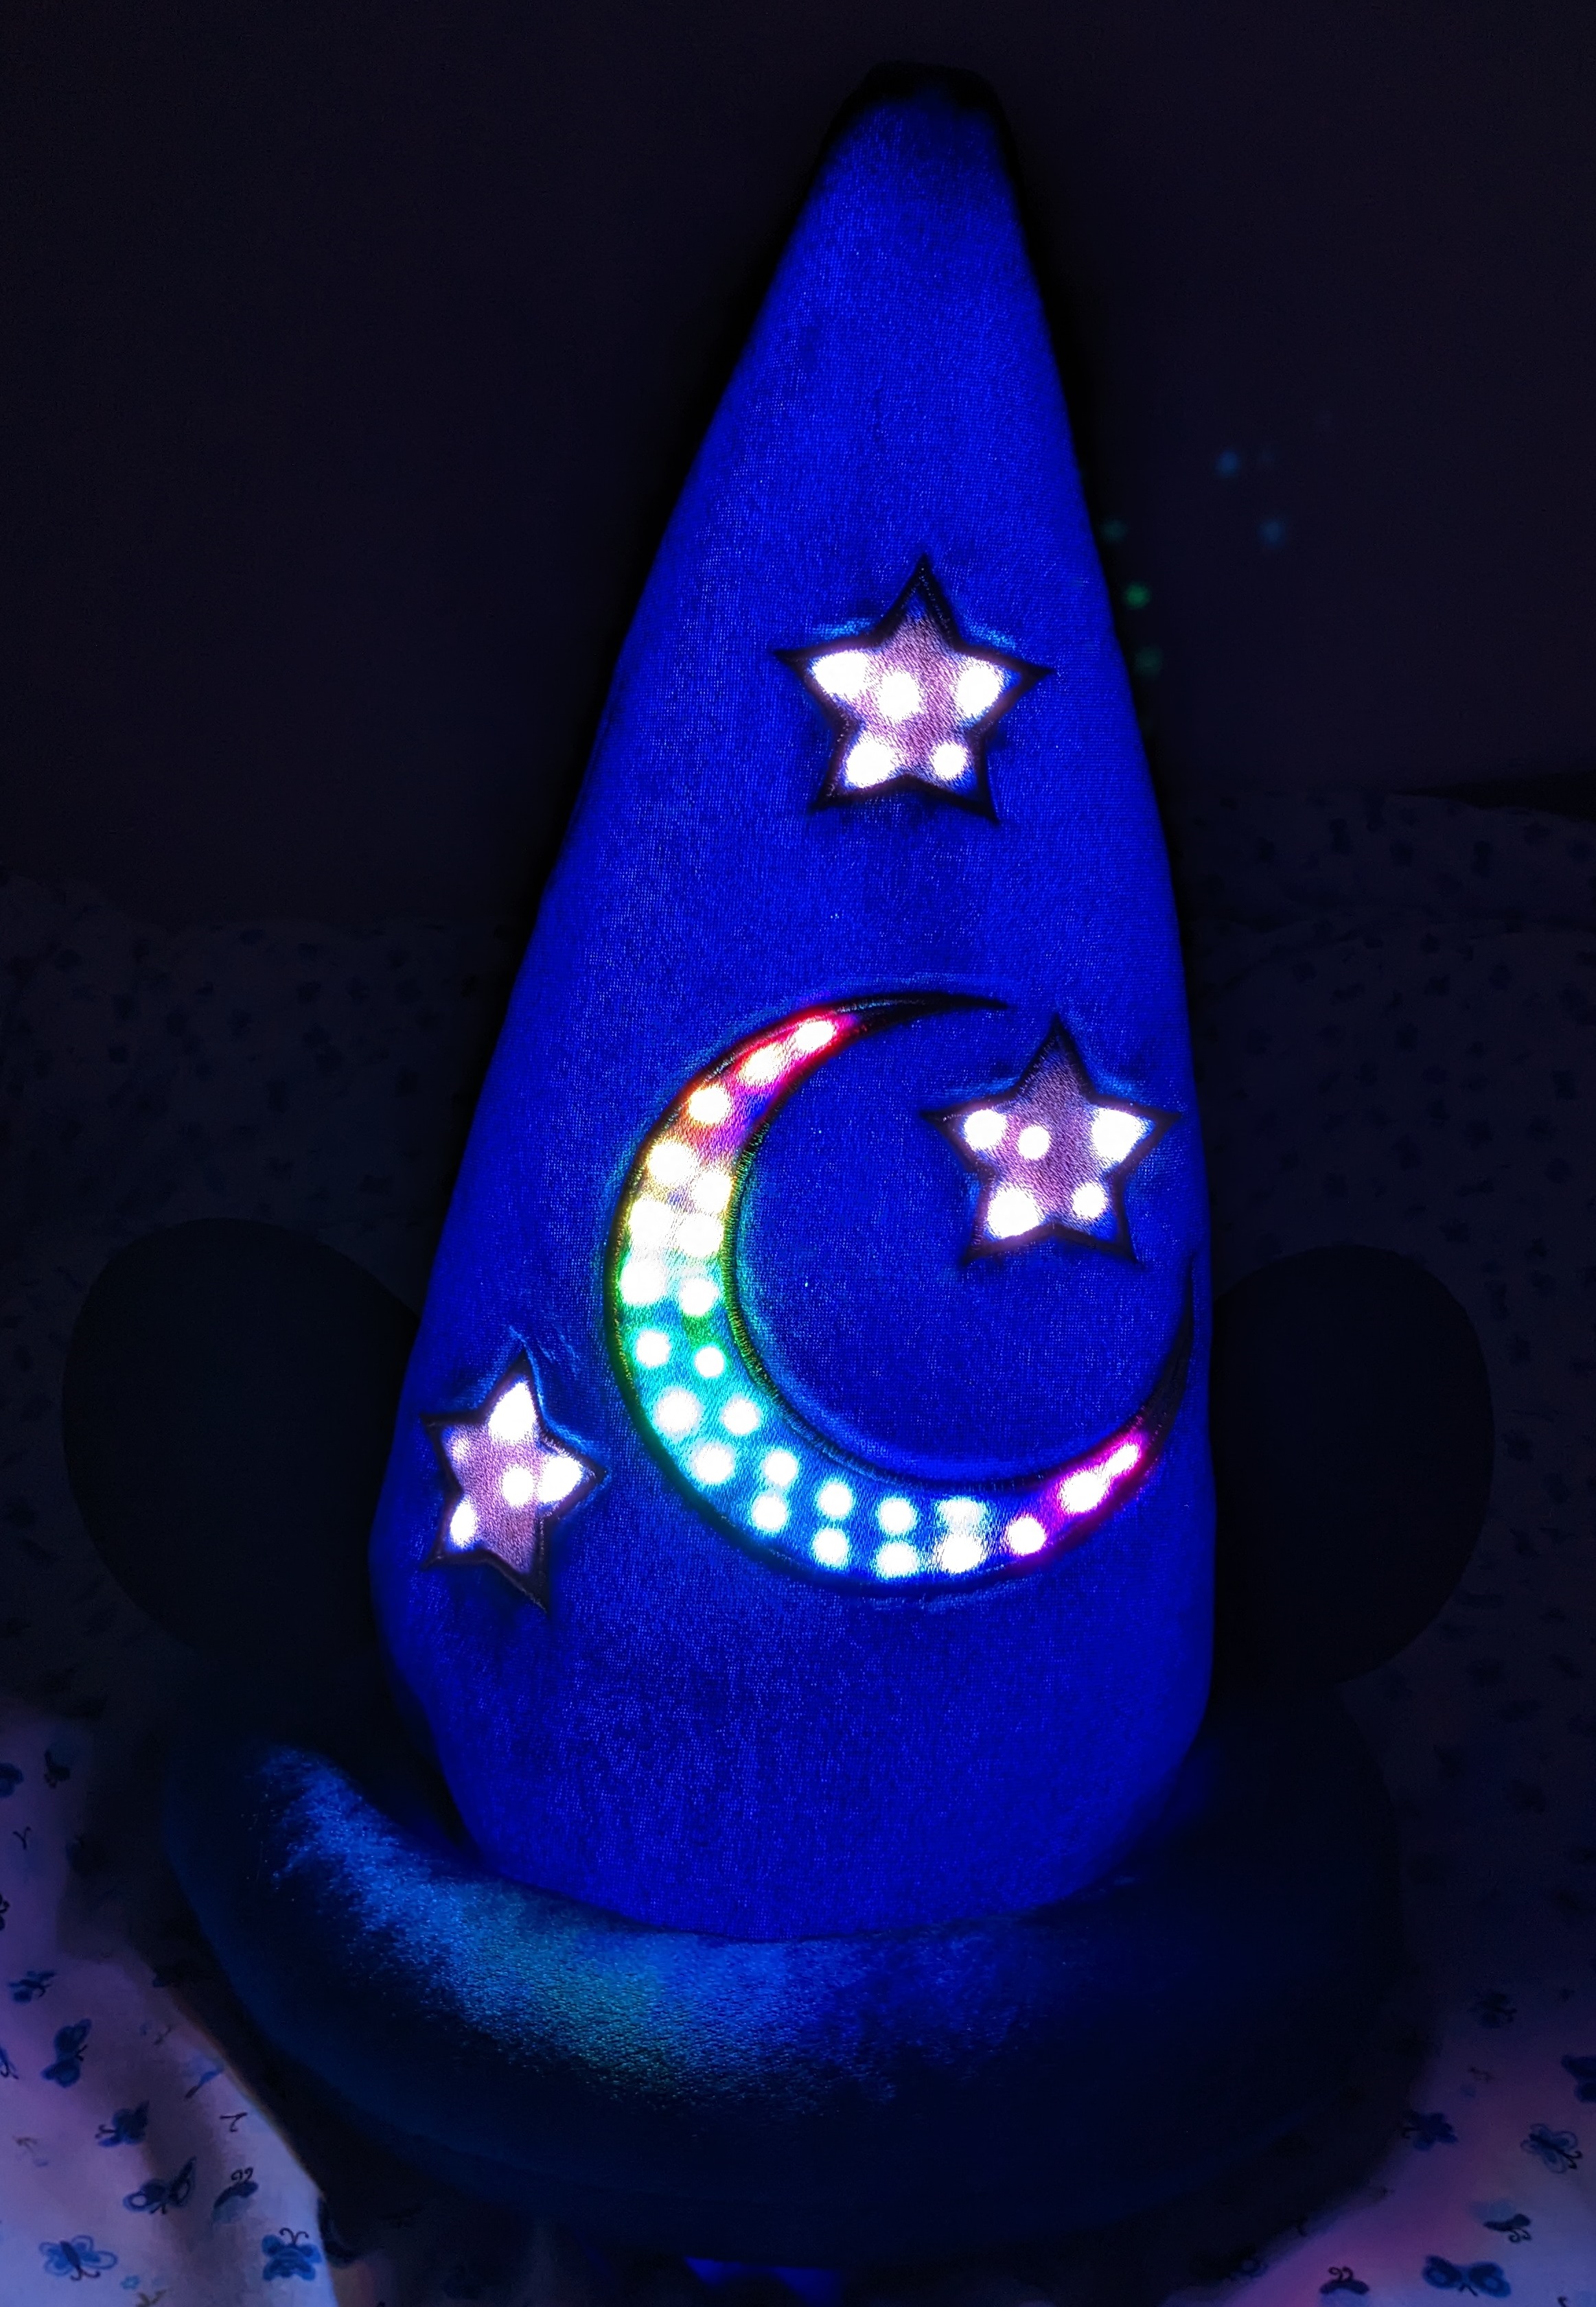 Illuminated sorcerer hat in a dark room